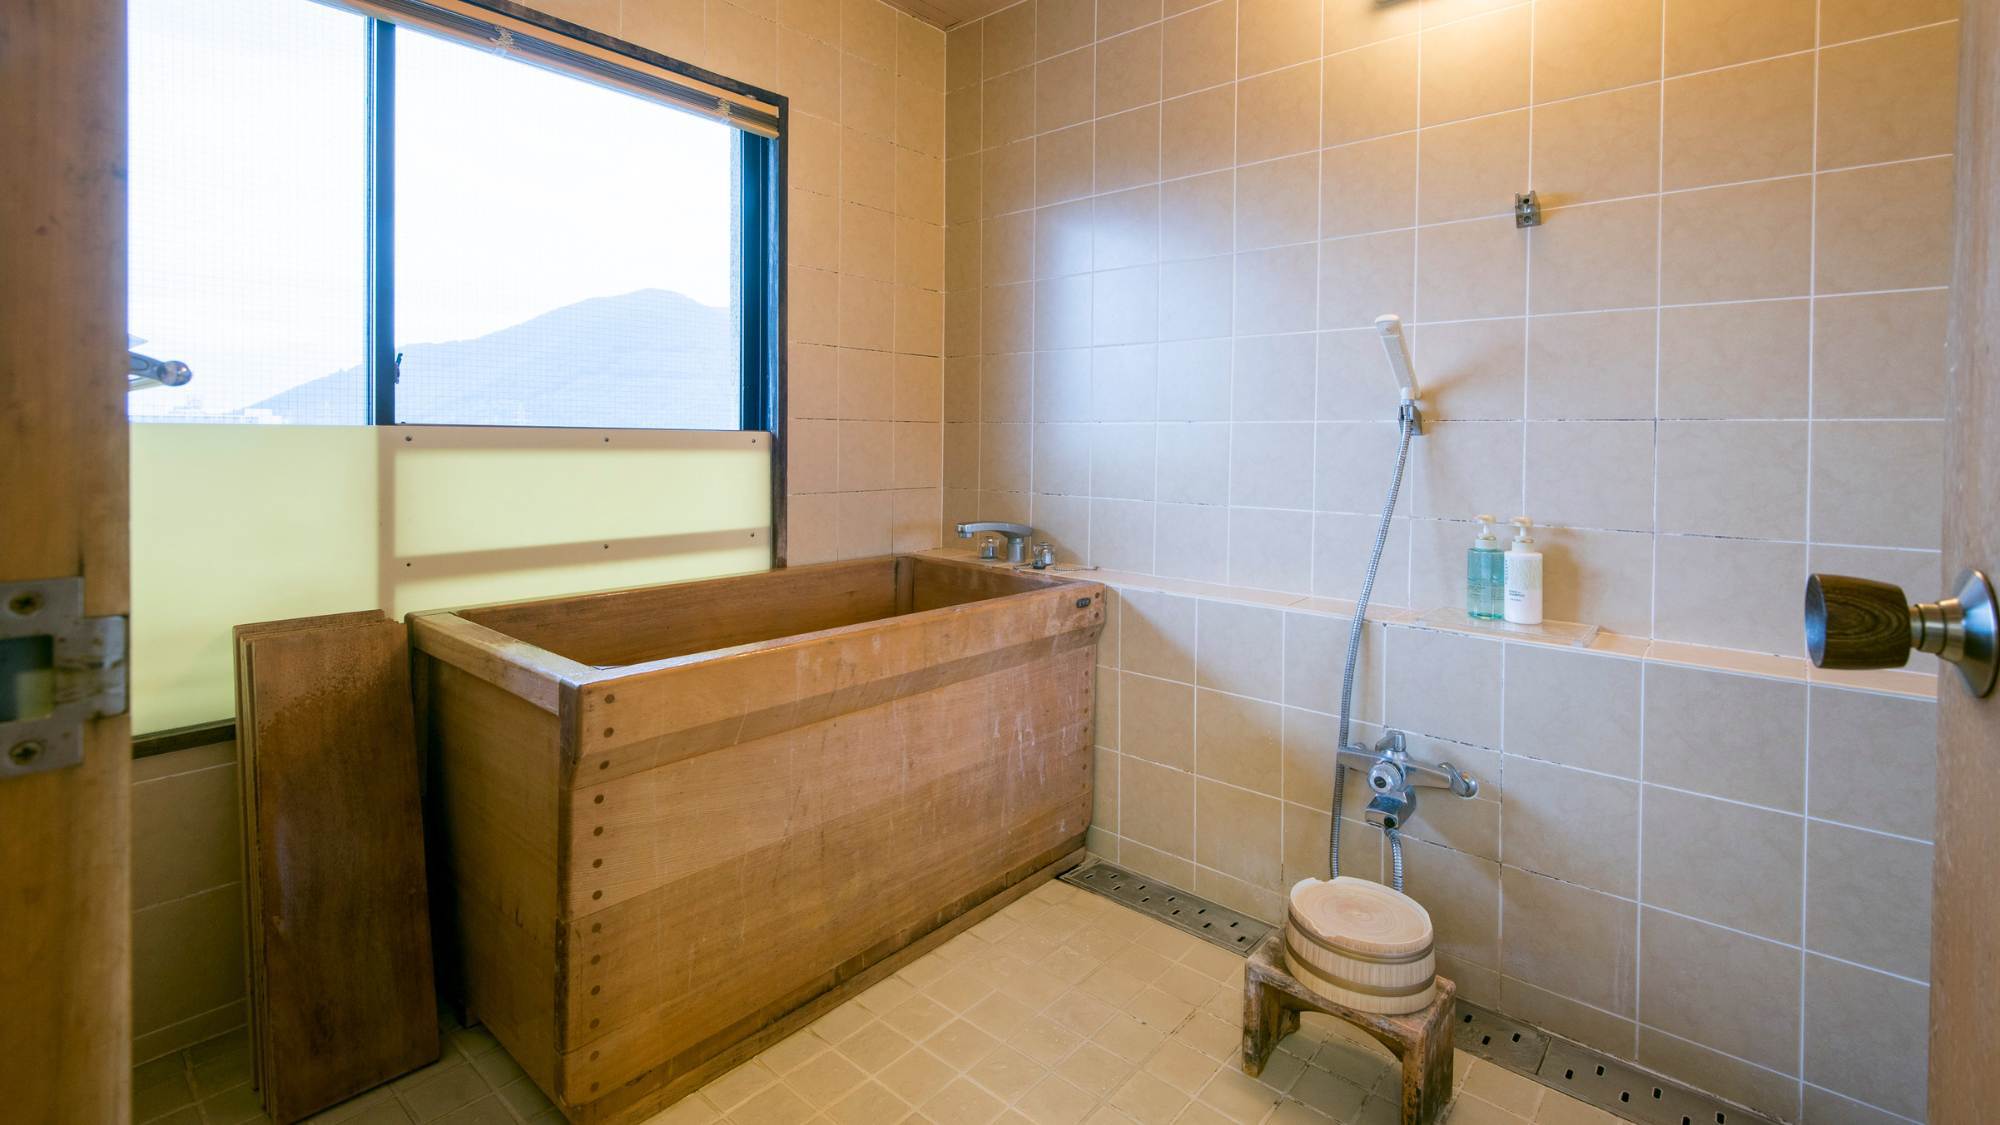 【最上階二間続き特別和室】お風呂はバス・トイレ別。檜の浴槽でお部屋でも温泉をお楽しみいただけます。